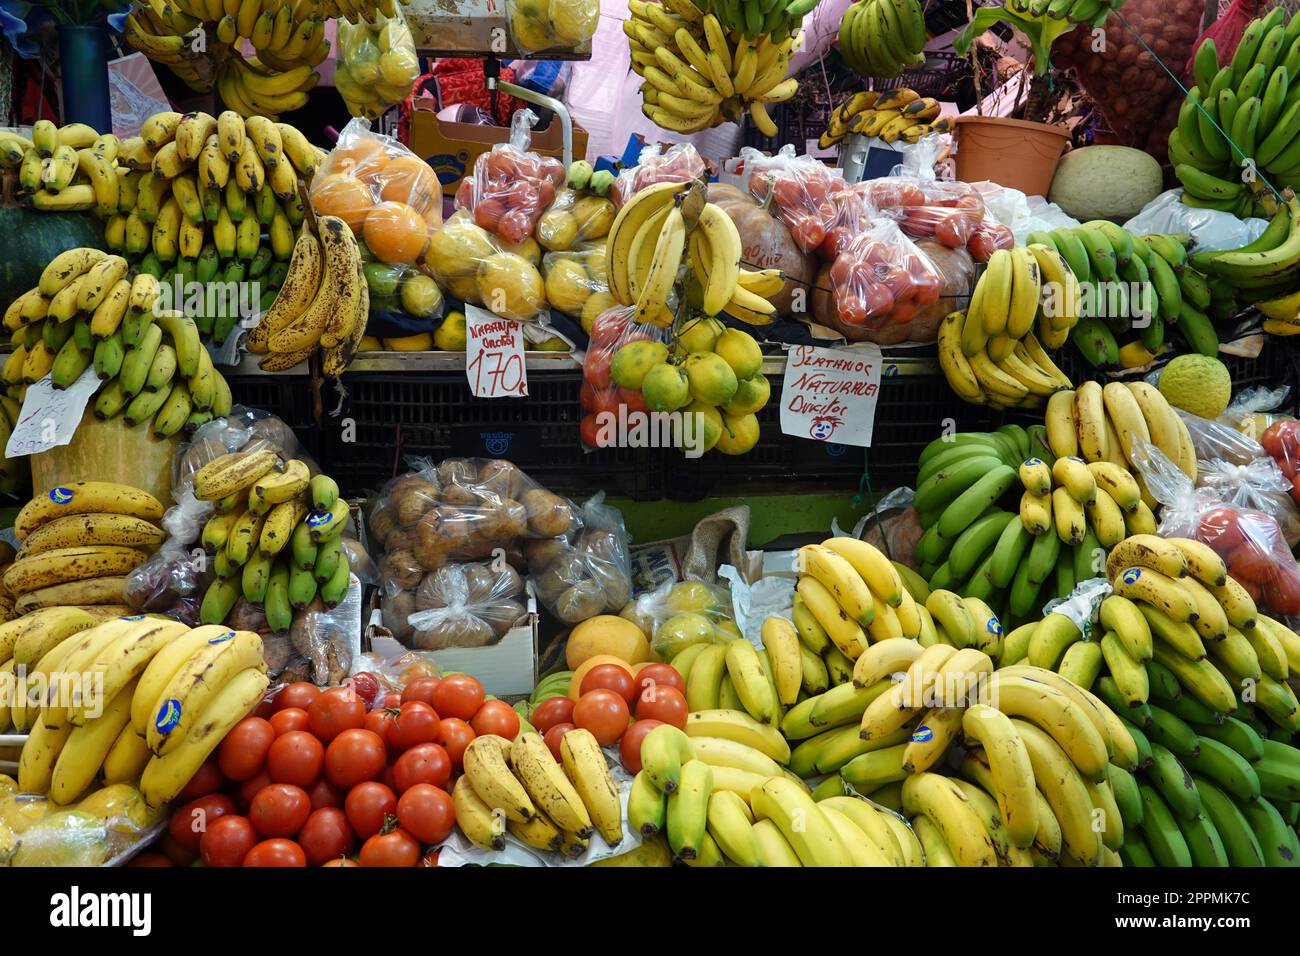 Ã¼berwÃ¤tigendes Obst- und GemÃ¼seangebot in der Markthalle Mercado de Vegueta Stock Photo